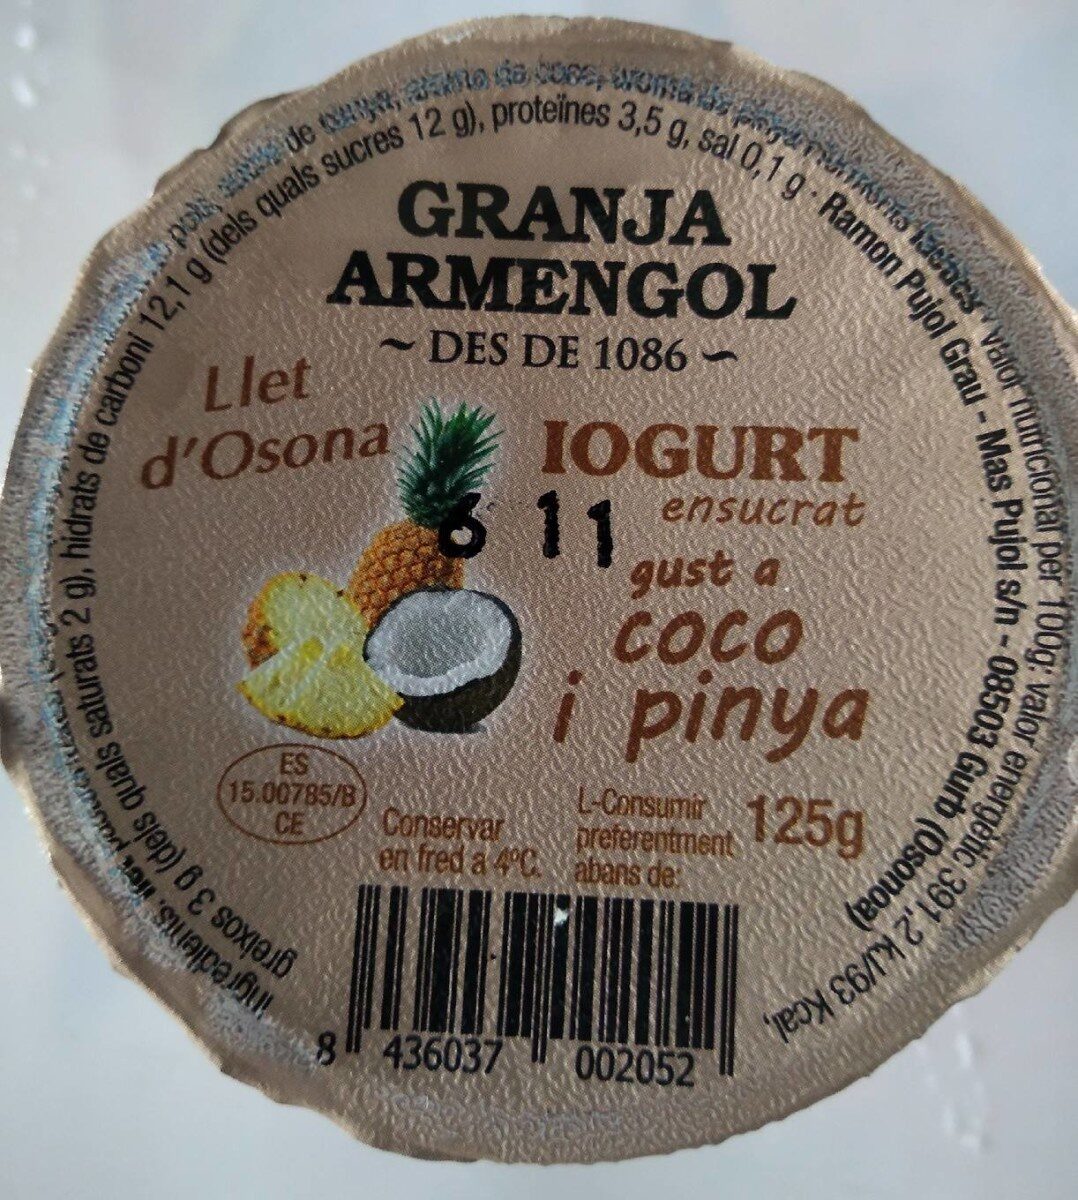 Iogurt Coco Pinya - Producte - es